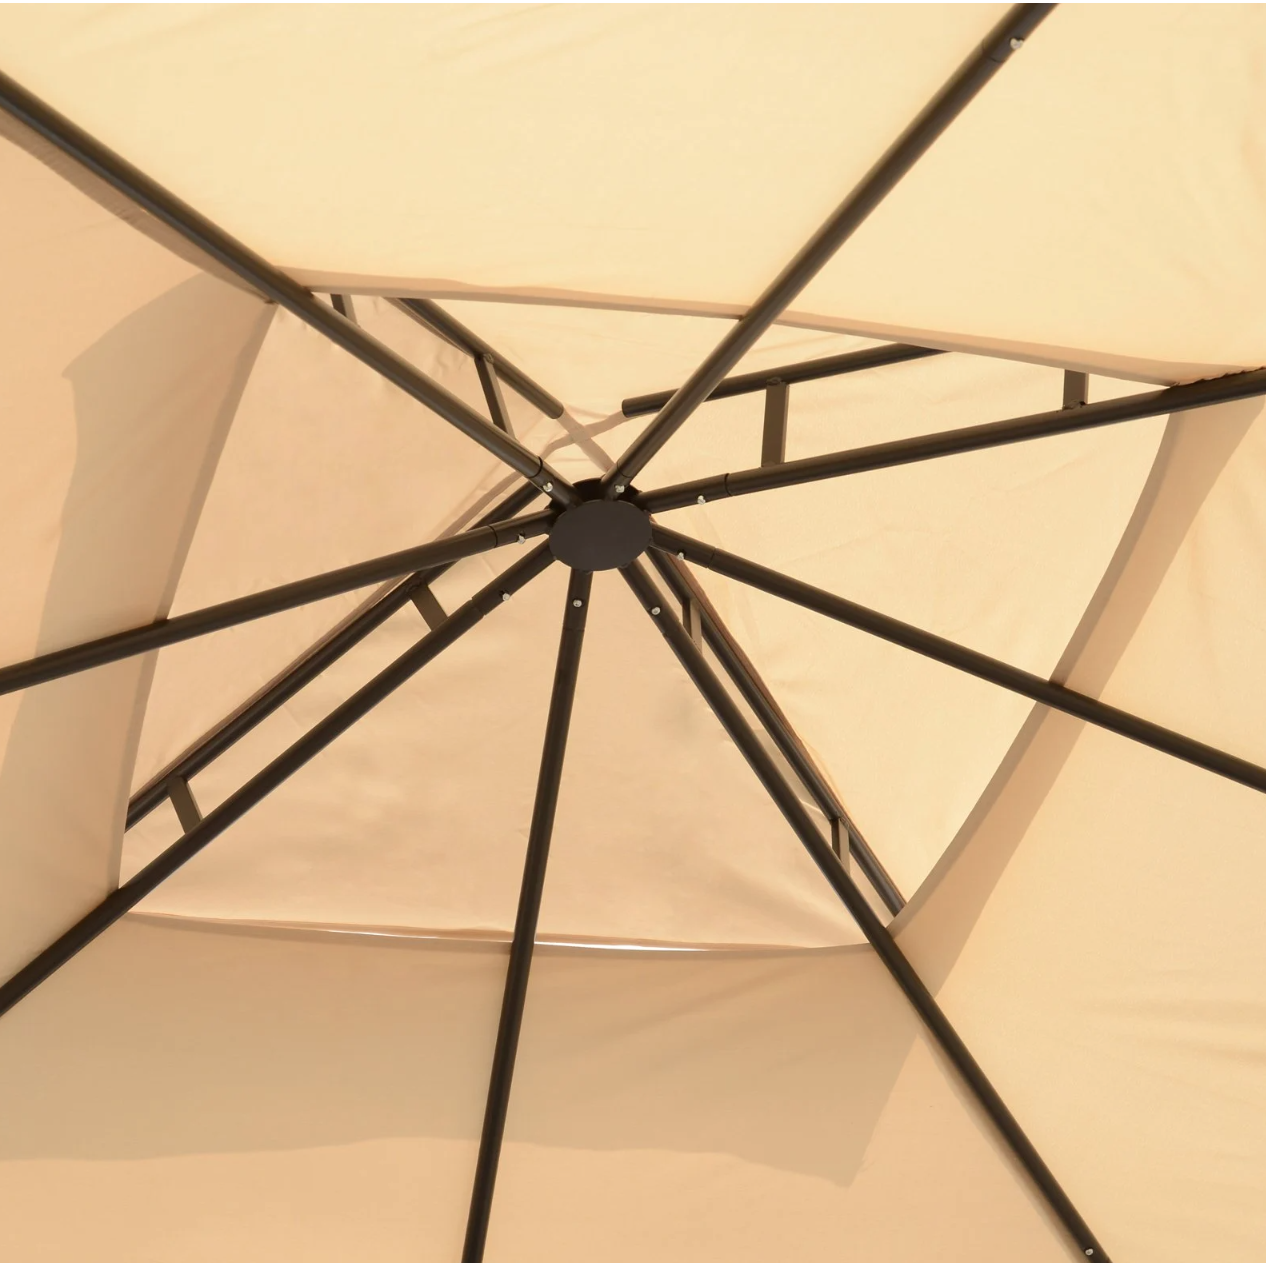 Tente de fête Nancy's Fridley - Pavillon - Résistant aux intempéries - Parois latérales - Beige - Noir - Métal - Polyester - L300 x L300 x H278 cm